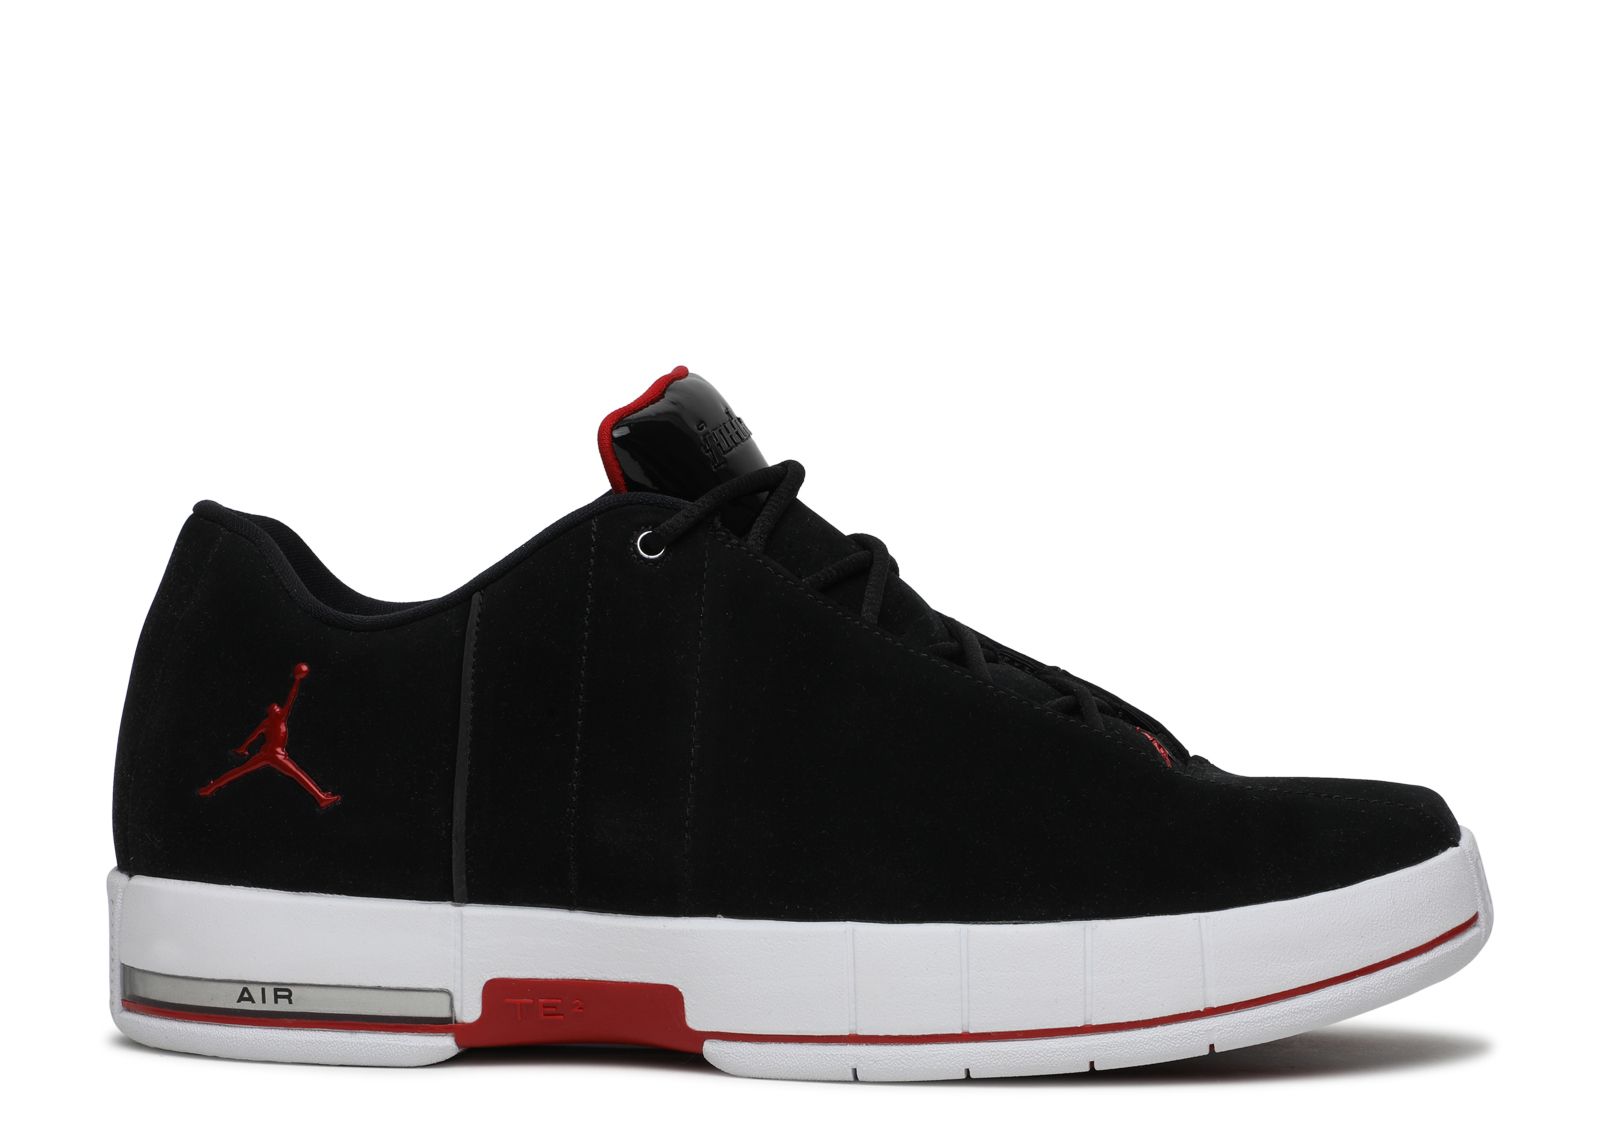 Jordan TE 2 Low 'Black' - Air Jordan - AO1696 001 - black/black red ...